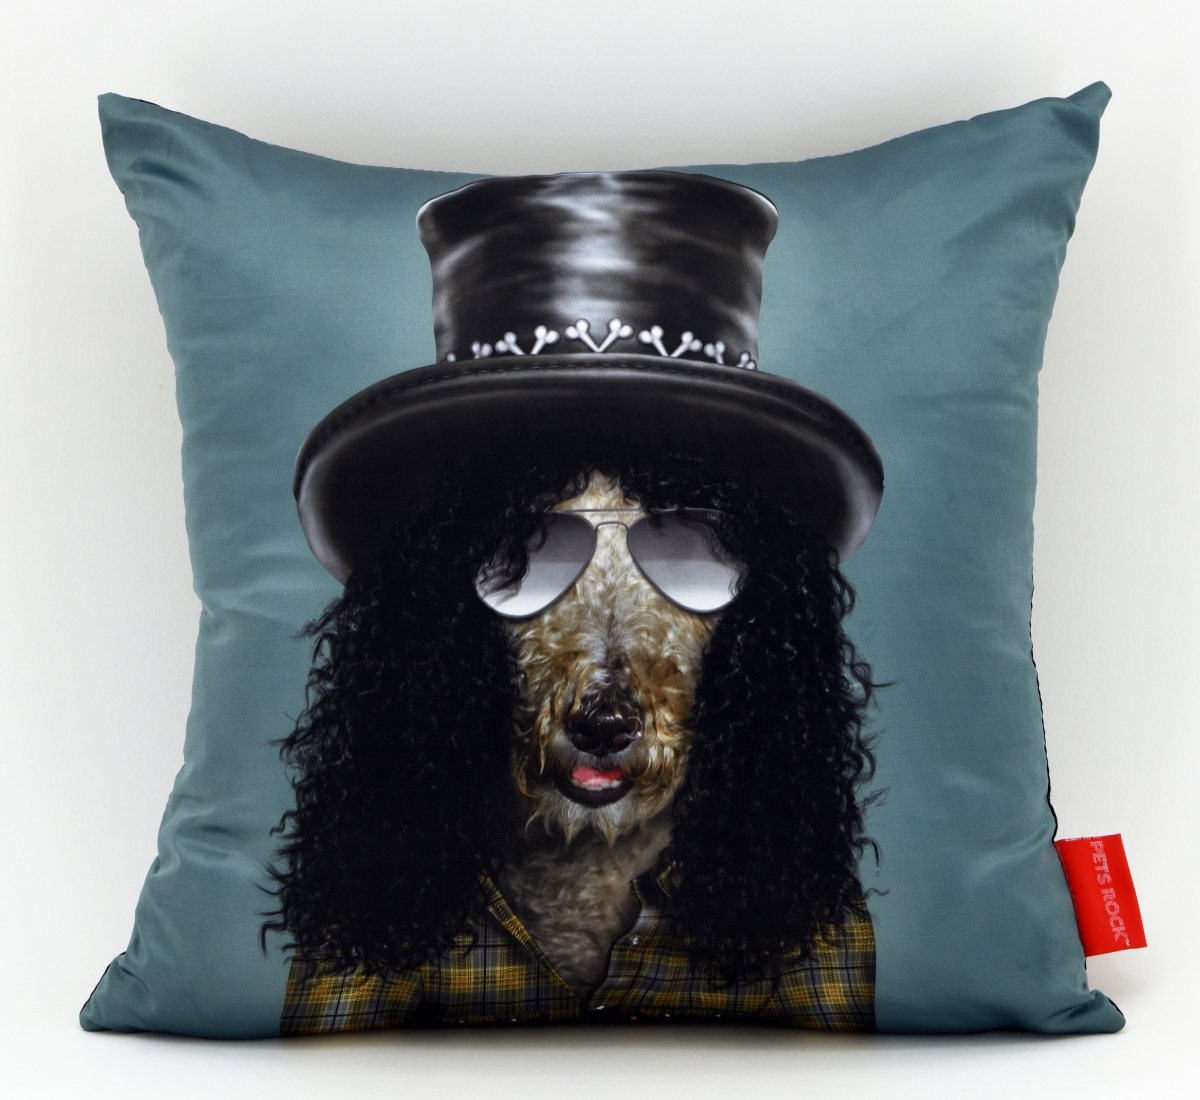 Empire Art Direct PRP-PR023-1818 Gnash Pillow Pets Rock Faux Silk Decorative Pillow